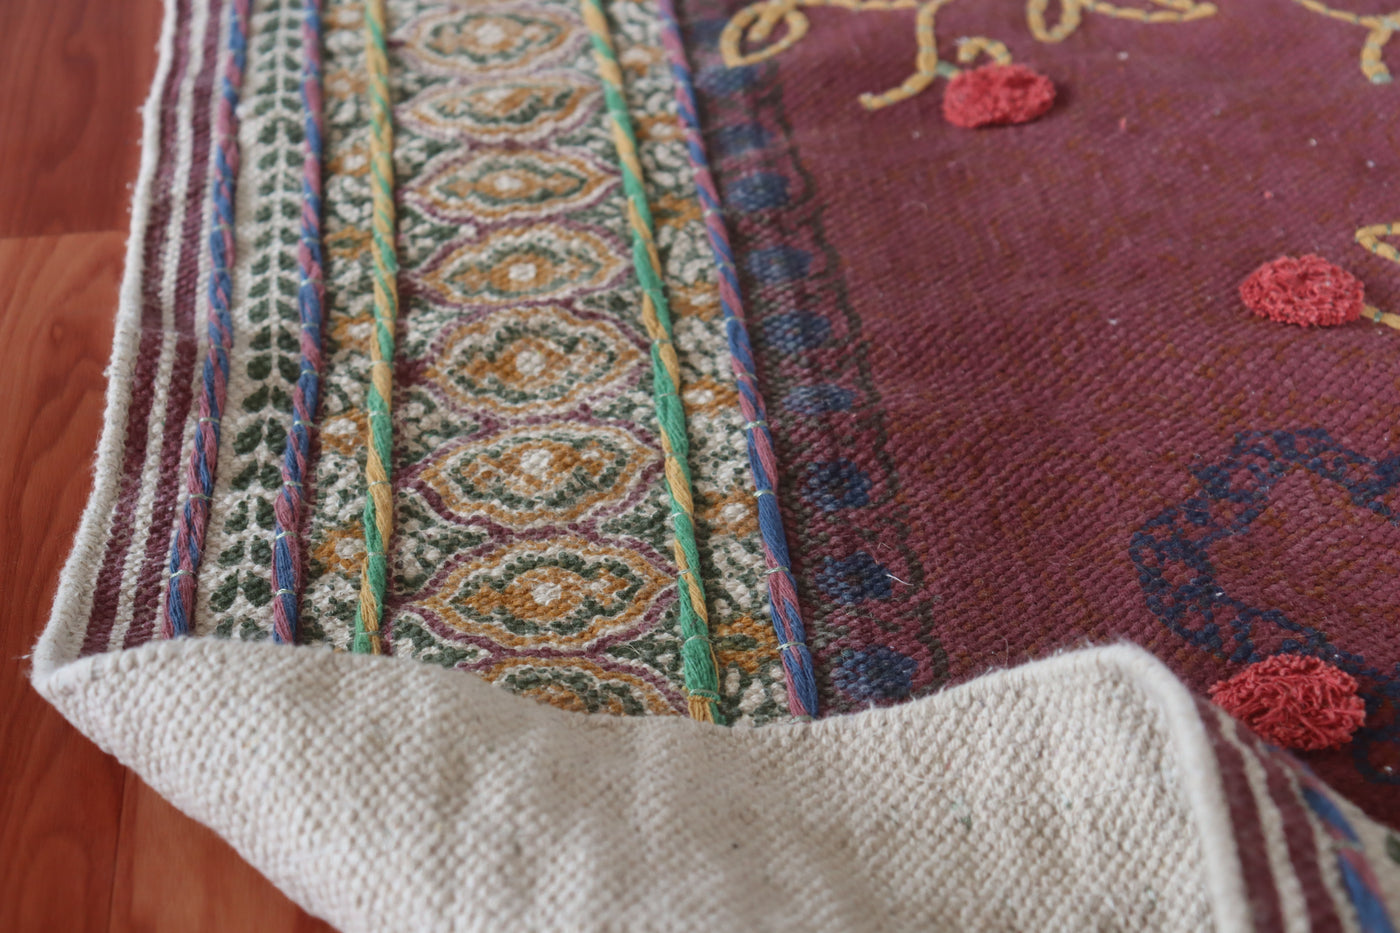 Vintage rug, floral designer embroidered rug, indian dhurrie rug, cotton homedecor rug, 2x3, 3x5, 4x6 feet